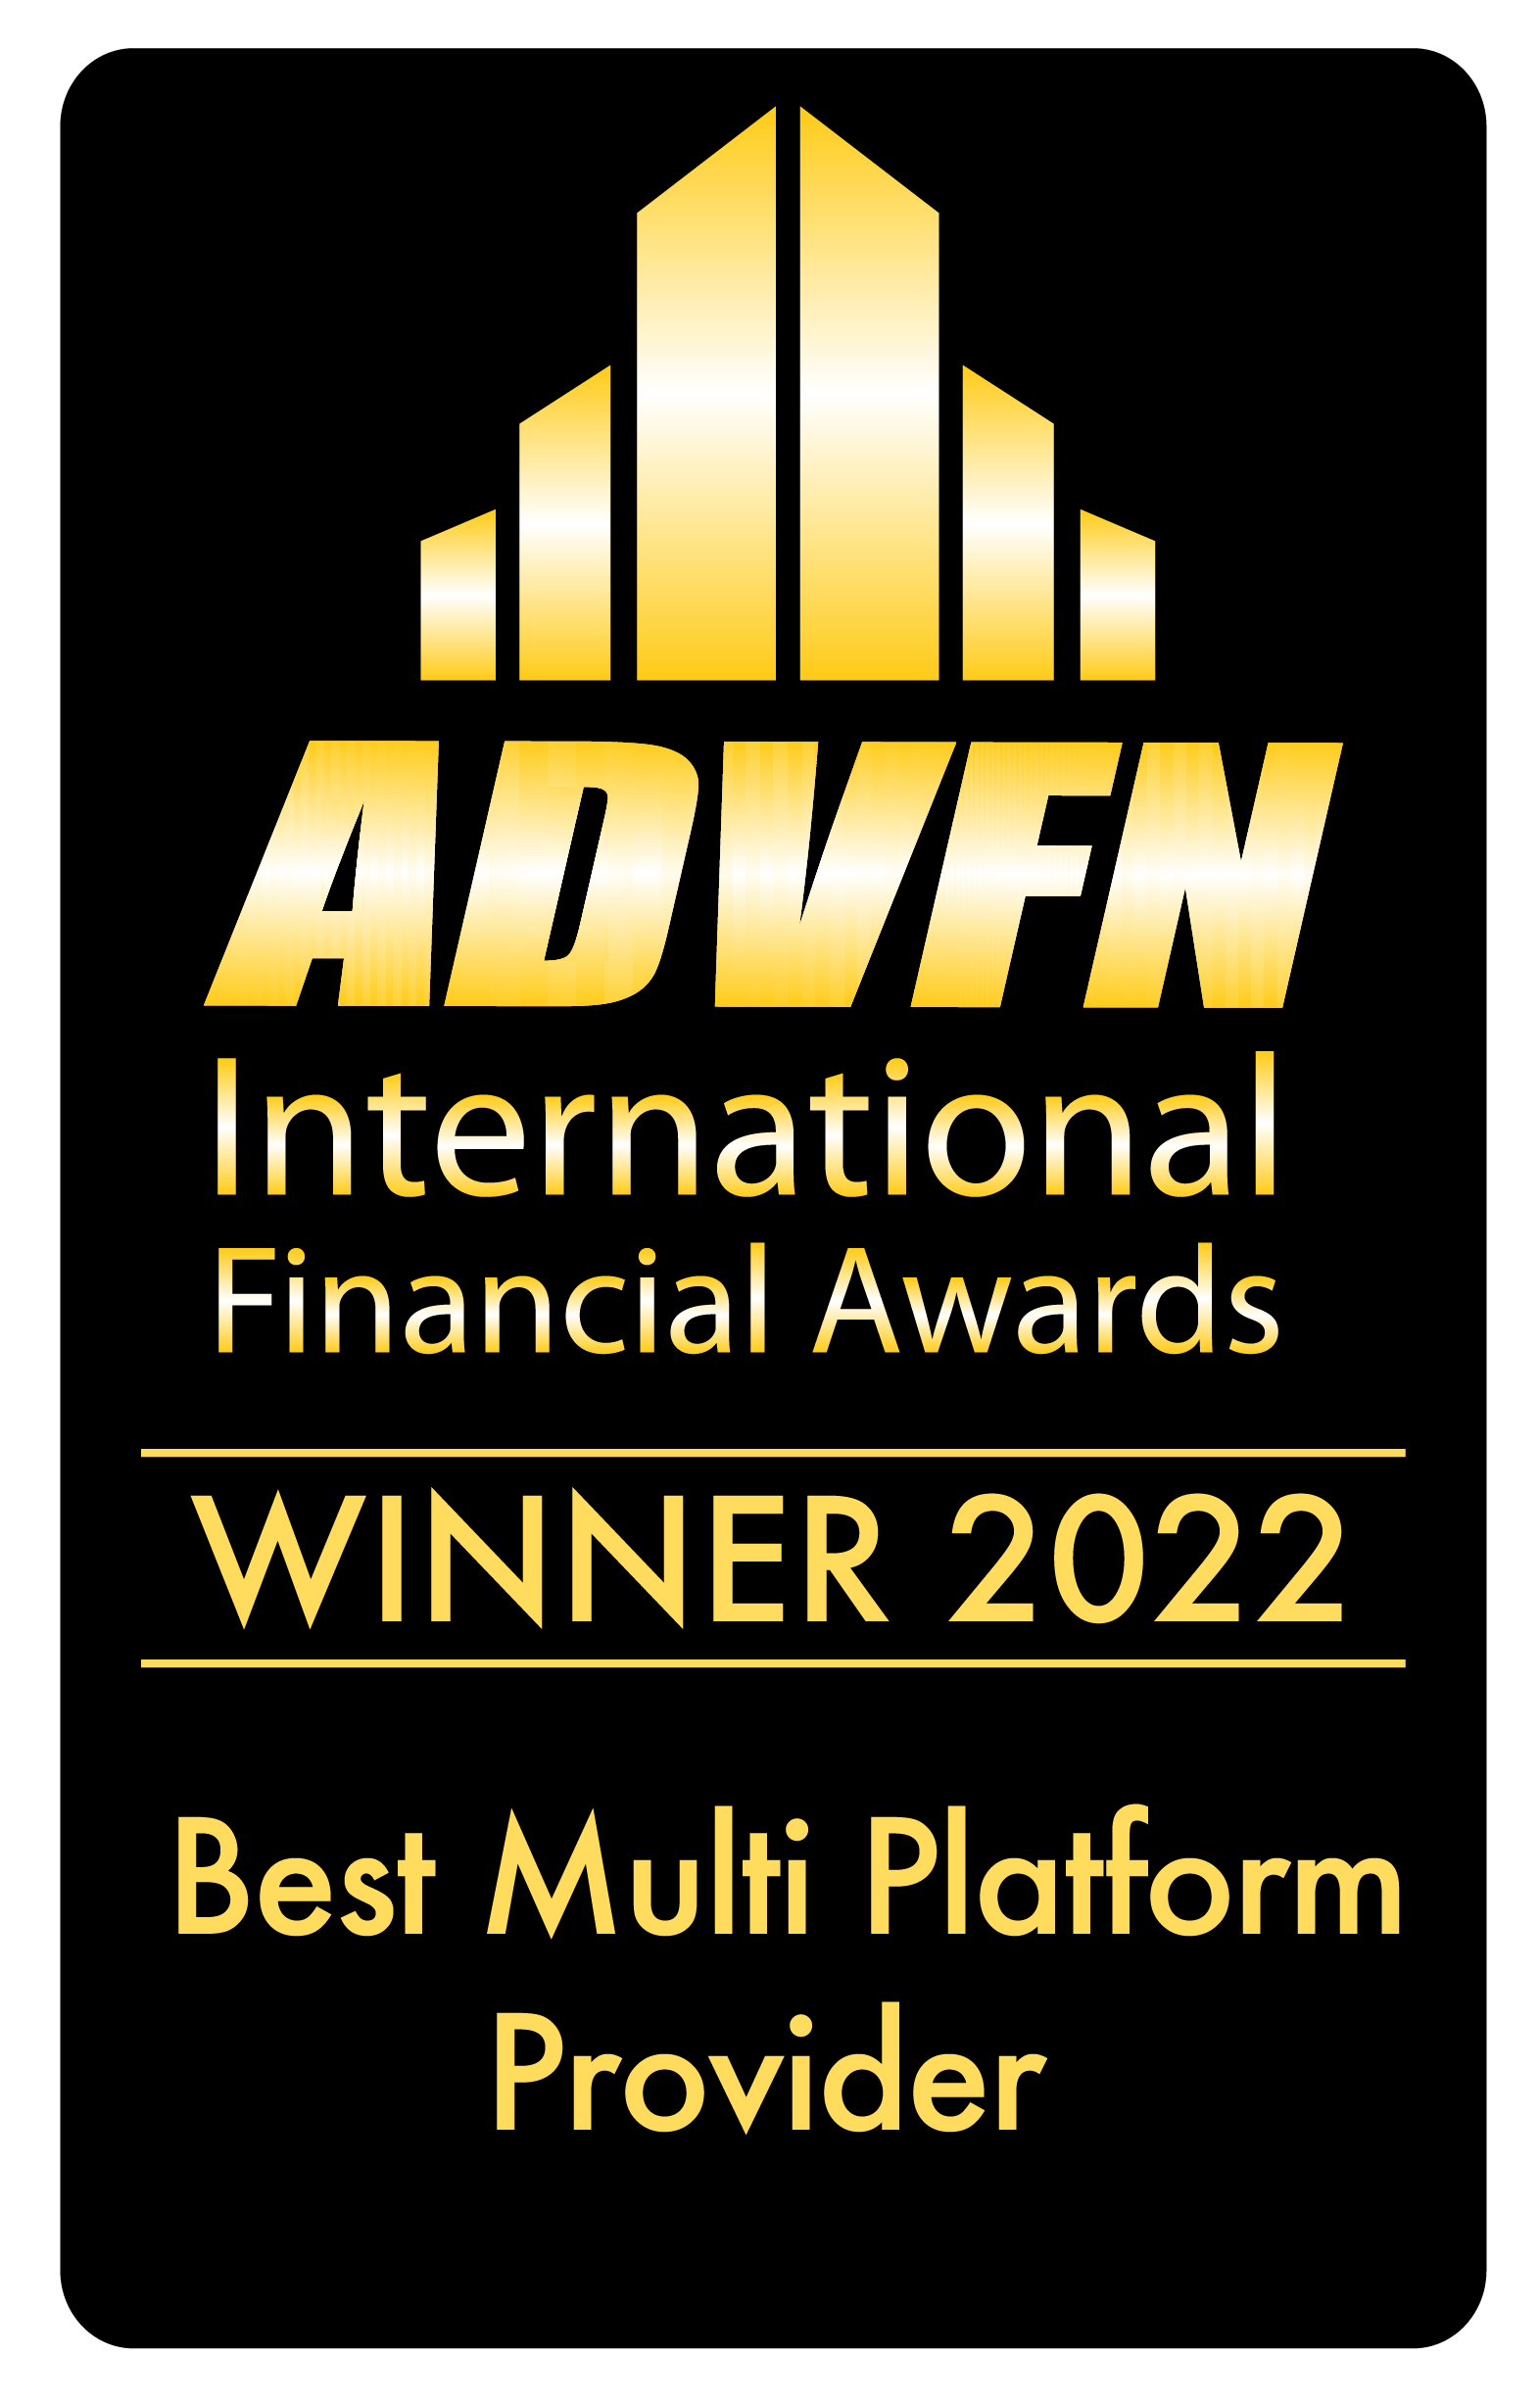 Best Multi Platform Provider by ADVFN International Financial Awards